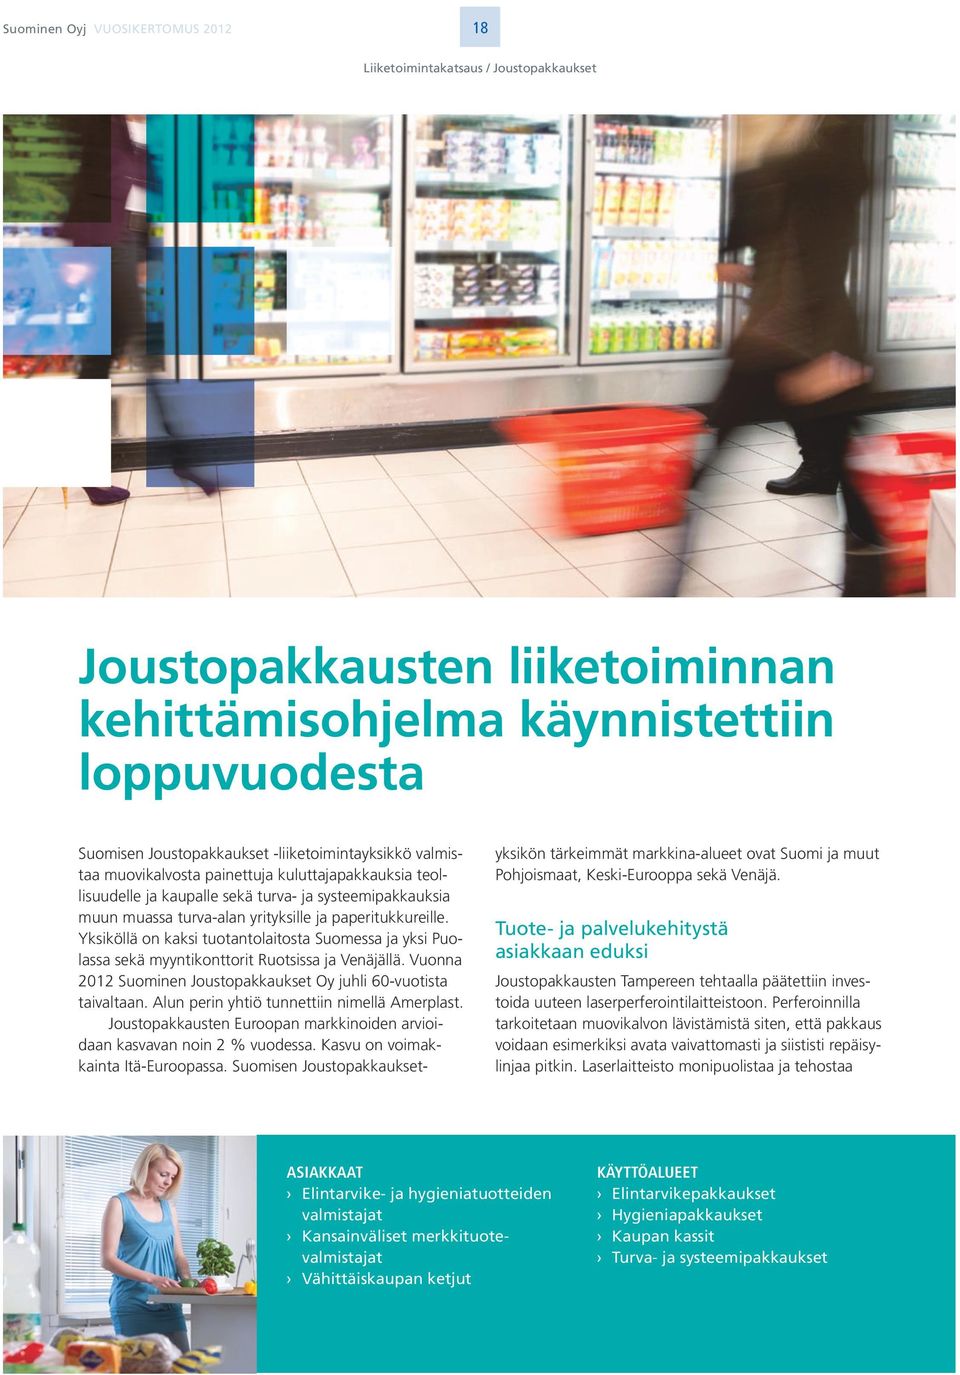 Yksiköllä on kaksi tuotantolaitosta Suomessa ja yksi Puolassa sekä myyntikonttorit Ruotsissa ja Venäjällä. Vuonna 2012 Suominen Joustopakkaukset Oy juhli 60-vuotista taivaltaan.